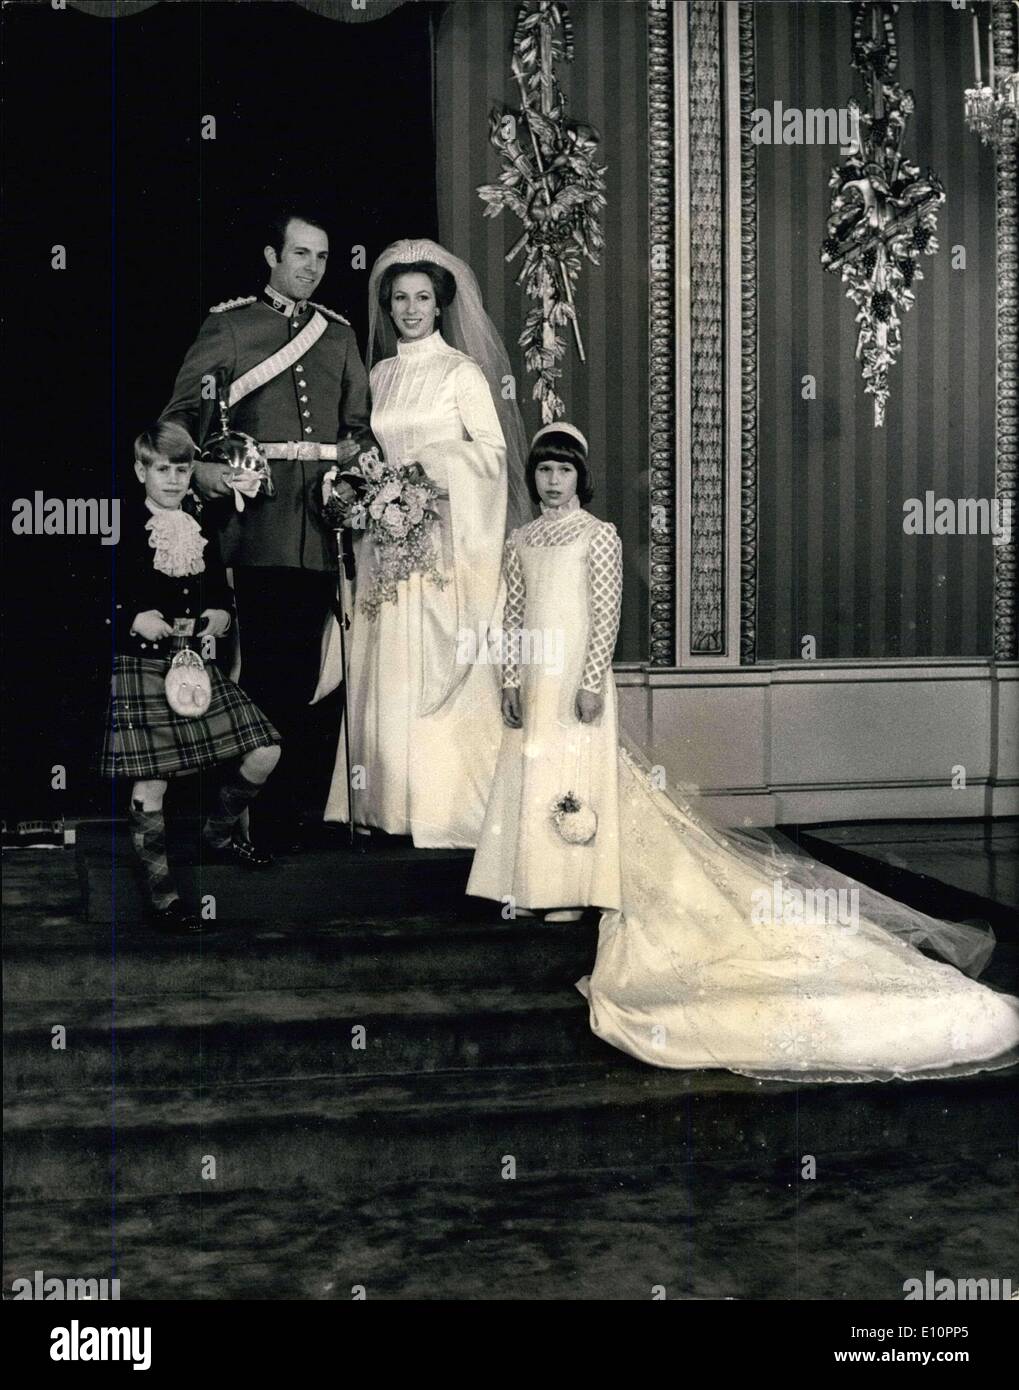 14. November 1973 - königliche Hochzeit: Foto zeigt Prinzessin Anne und Captain Mark Philips Pose im Thronsaal des Buckingham Palastes nach der Hochzeit Zeremonie. Prinzessin Andrew, der Seite und Sarah Armstrong-Jones, die Brautjungfer Stand mit ihnen. Stockfoto